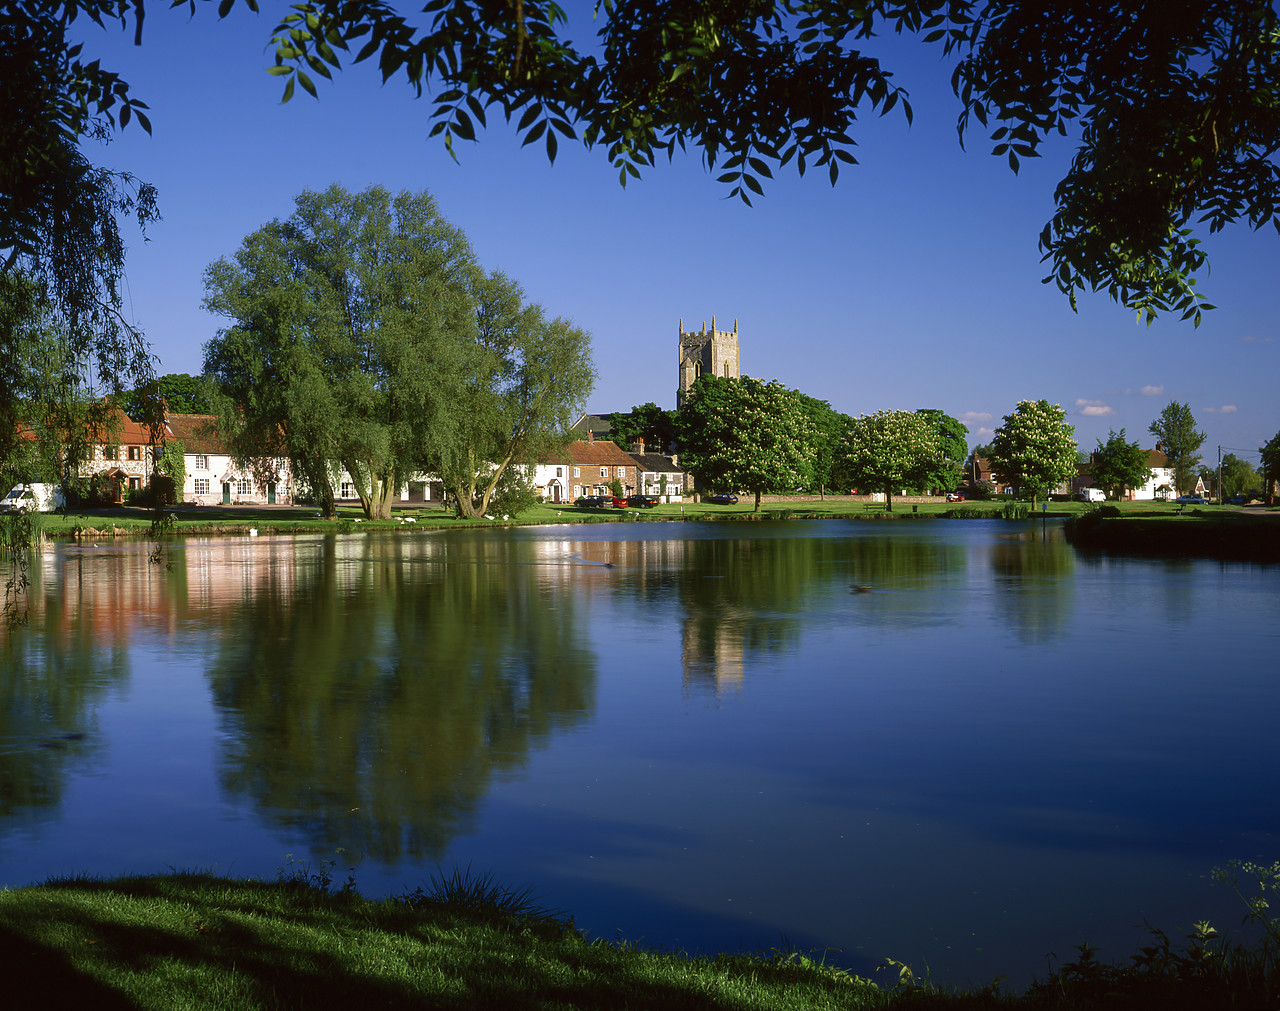 #990392-3 - Village Pond, Great Massingham, Norfolk, England